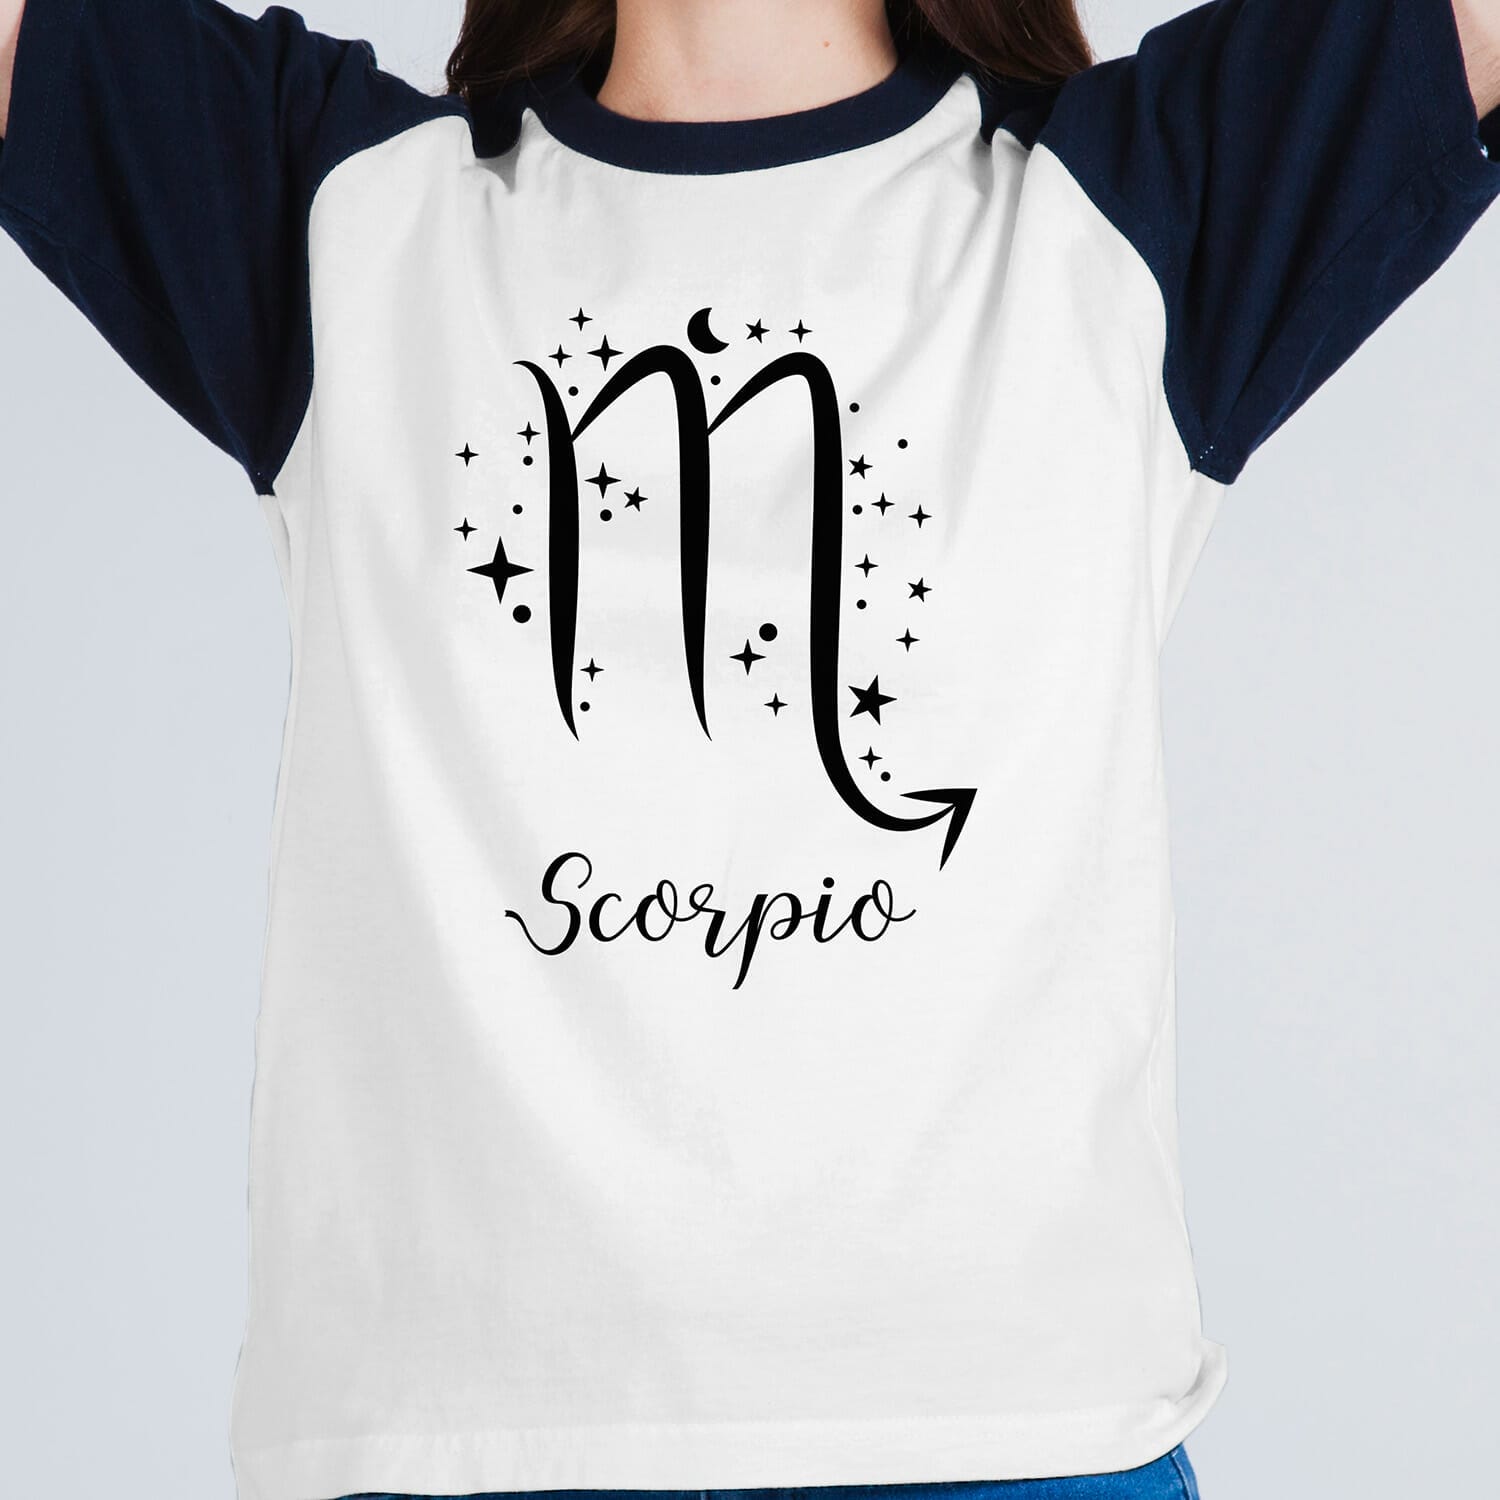 Scorpio horoscope Tshirt design